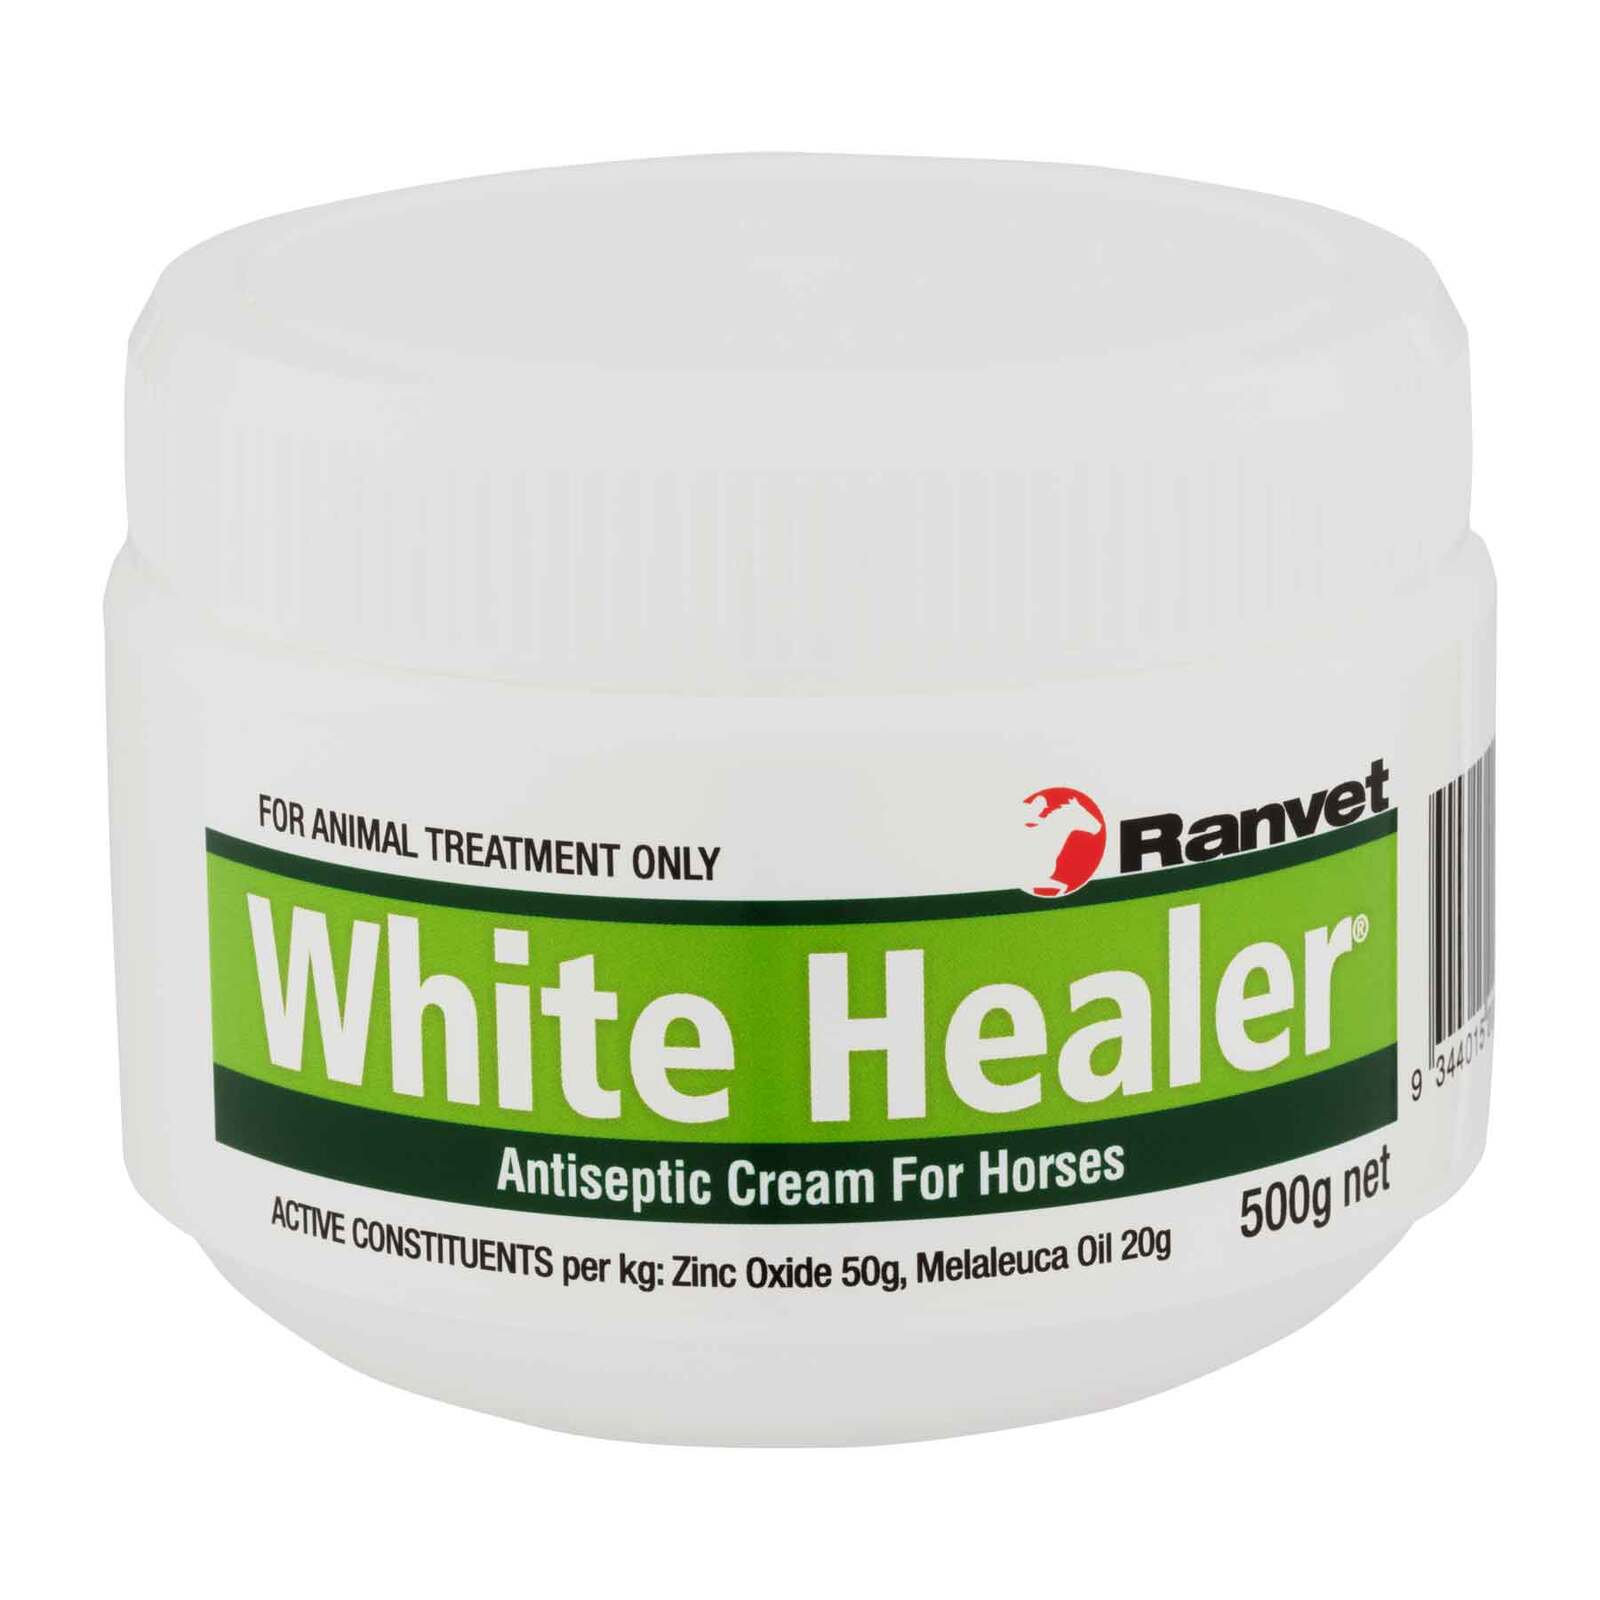 Ranvet White Healer 500g Antiseptic Cream